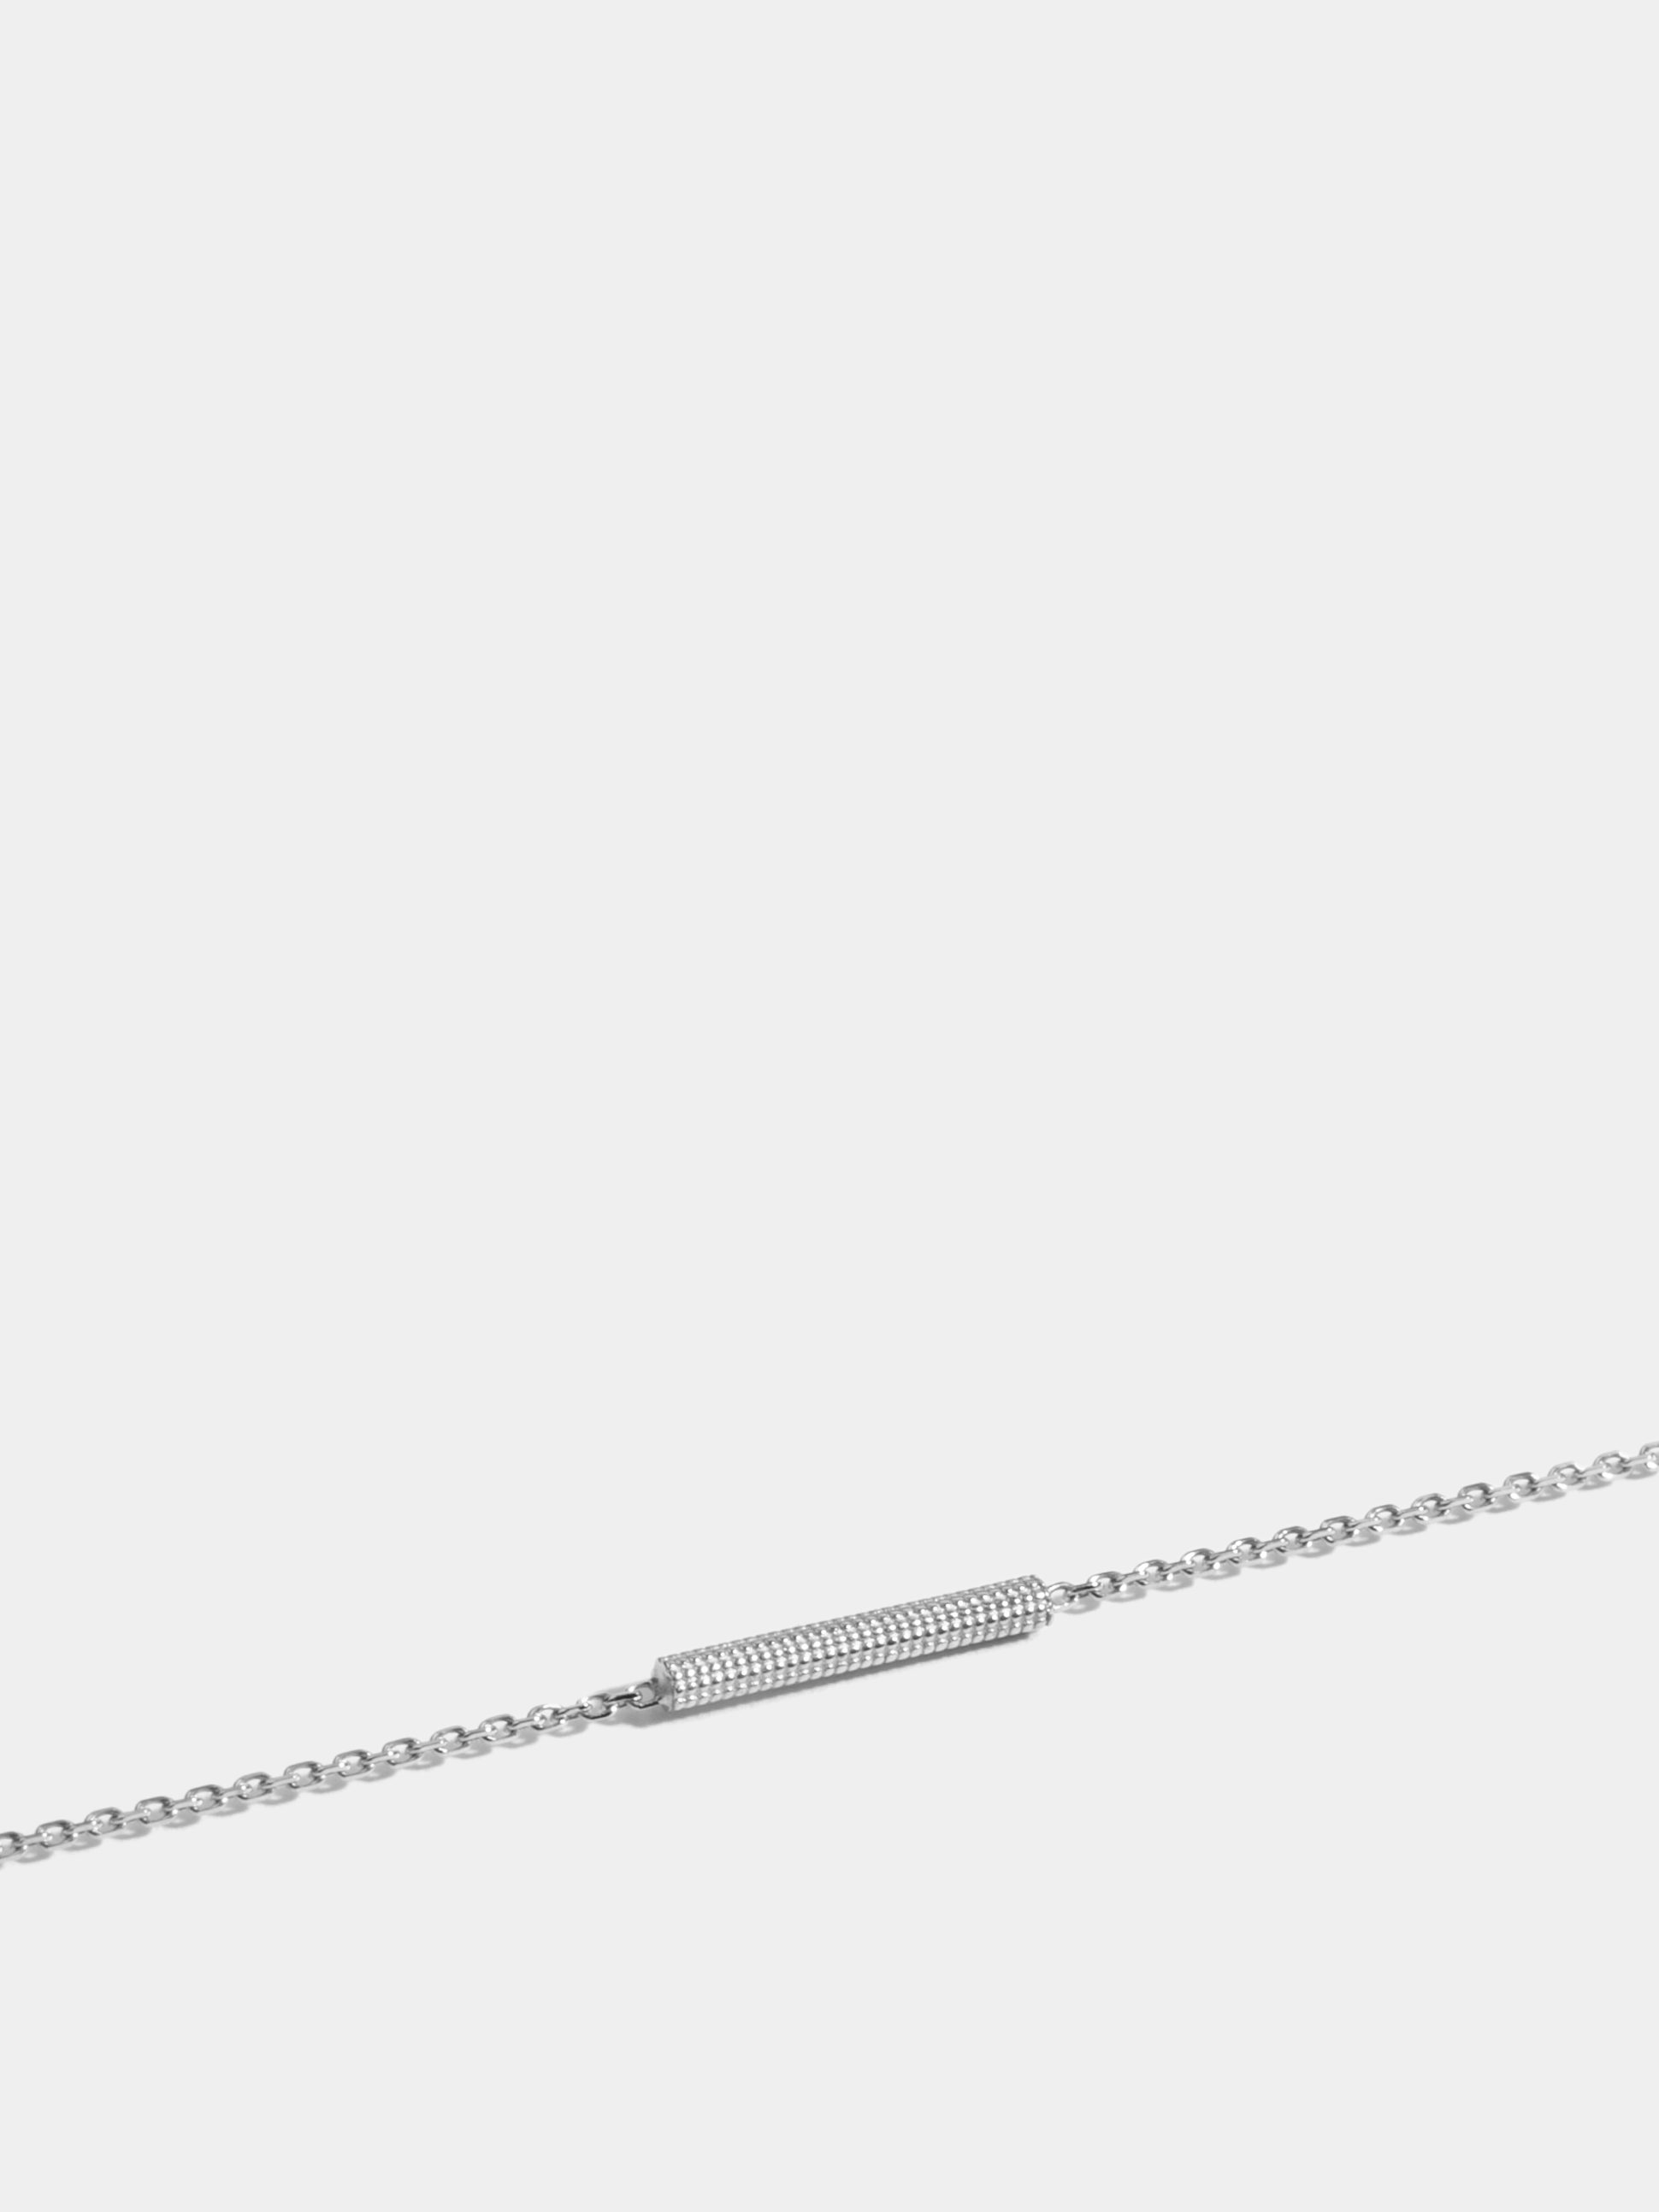 Motif Anagramme millegrains en Or blanc éthique 18 carats certifié Fairmined, sur chaîne de 18 cm